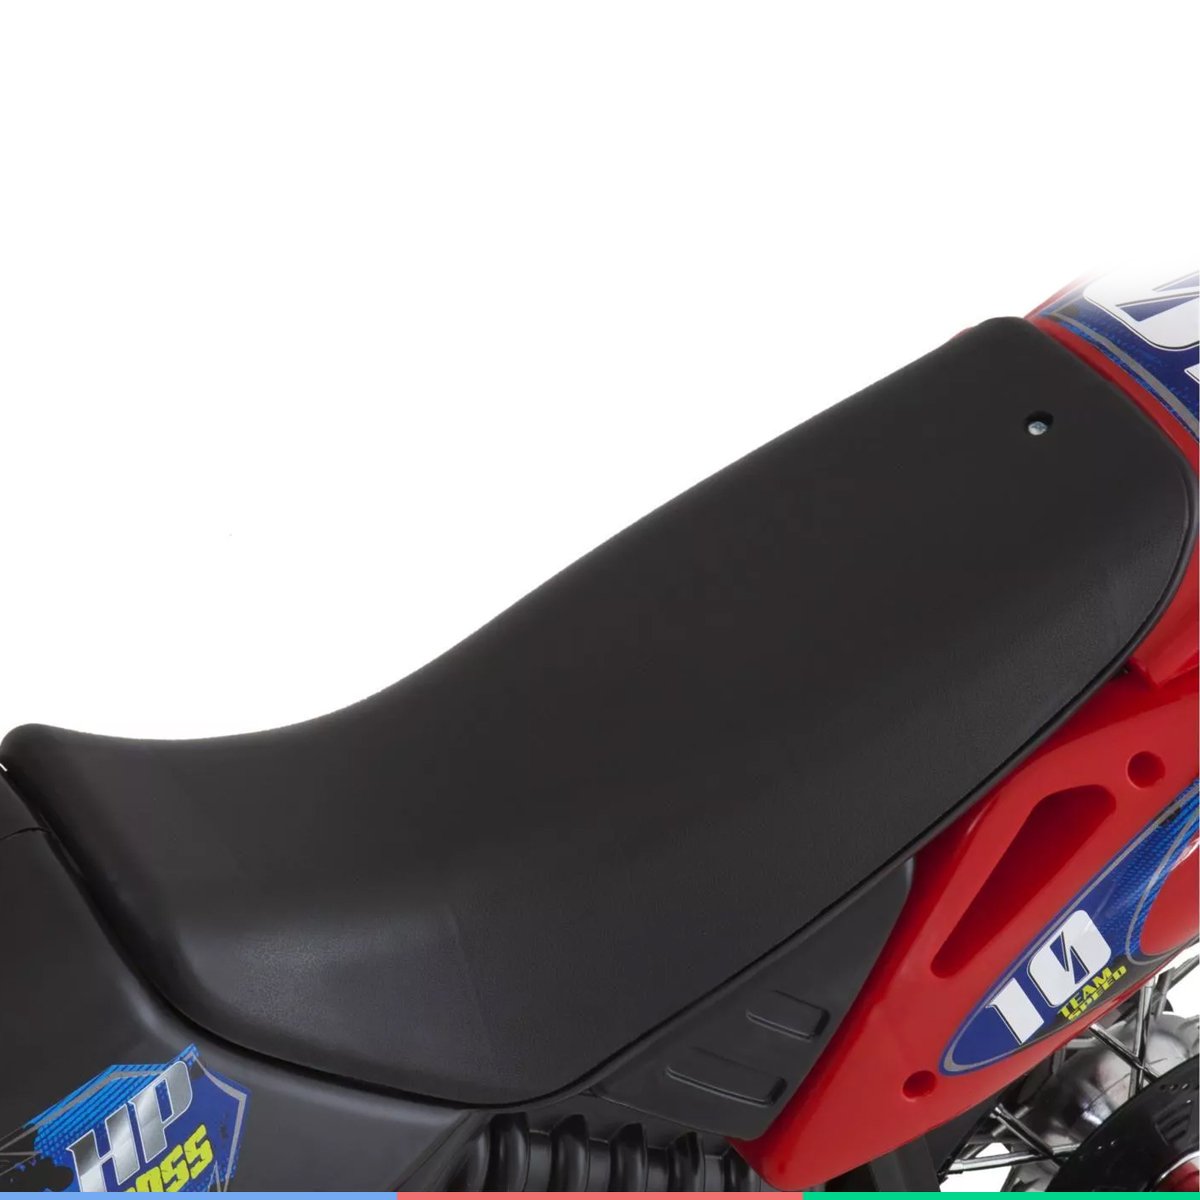 Moto Elétrica Infantil Motocross Para Criança +3 anos até 20kg